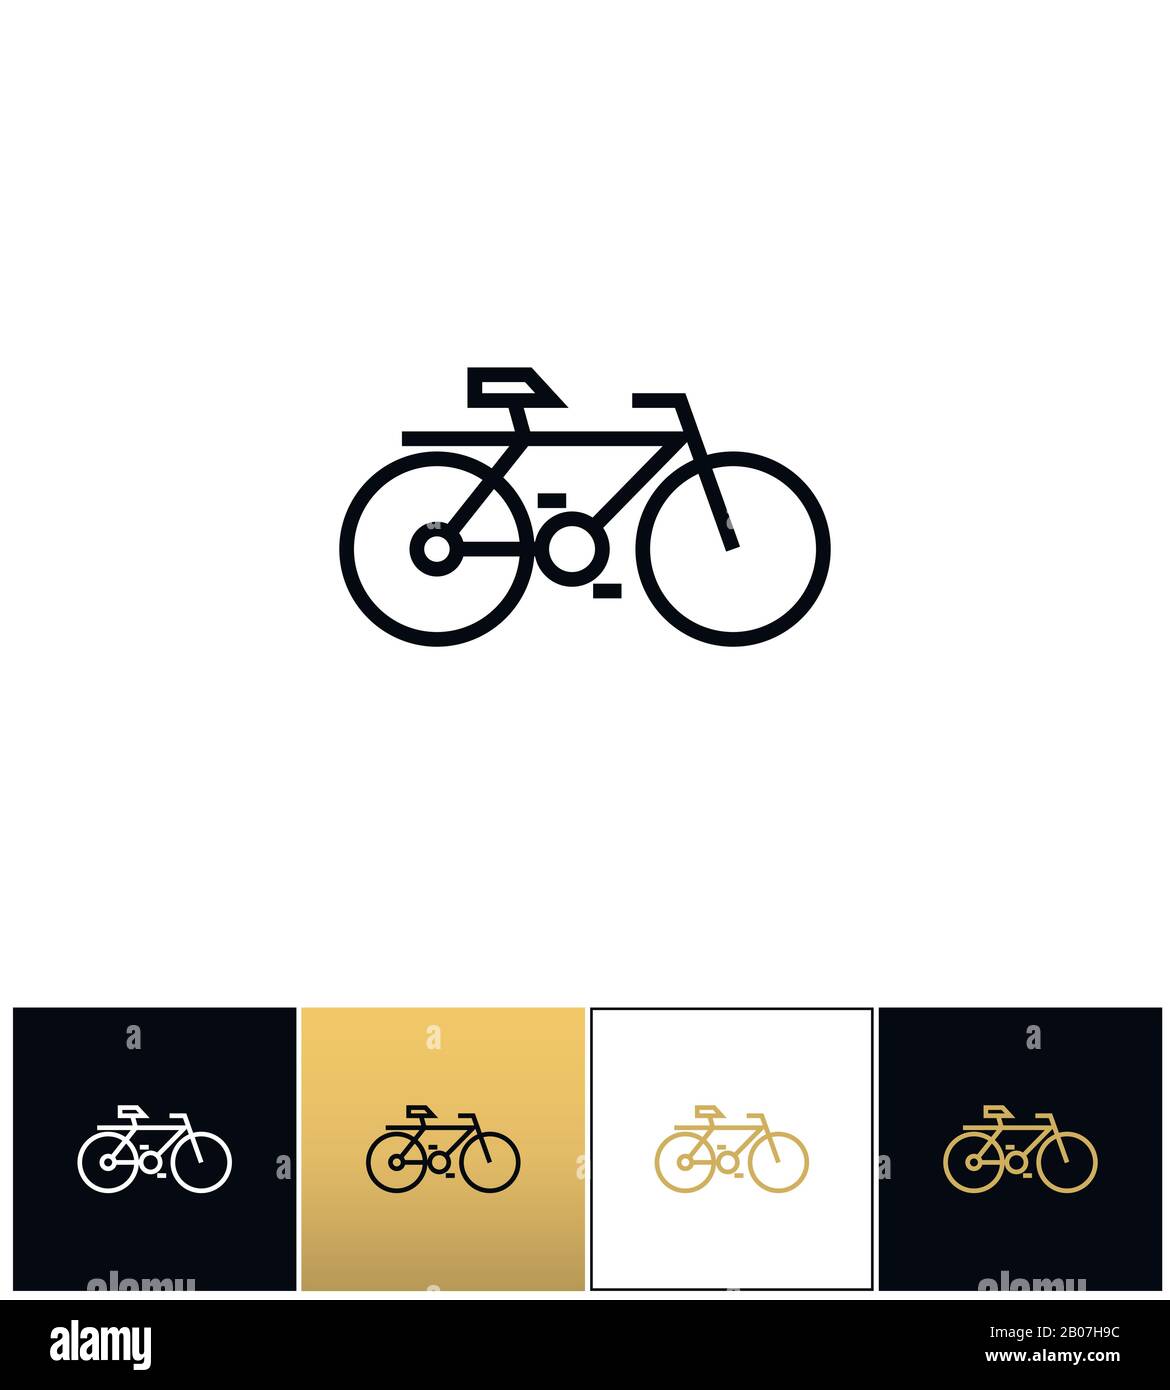 Symbol für Fahrradlinie oder Vektorsymbol für Fahrgeschwindigkeit auf dem Fahrrad. Bicycle Line Symbol oder Travel Velocity Bike Umriss Piktogramm auf schwarzem, weißem und goldenem Hintergrund Stock Vektor